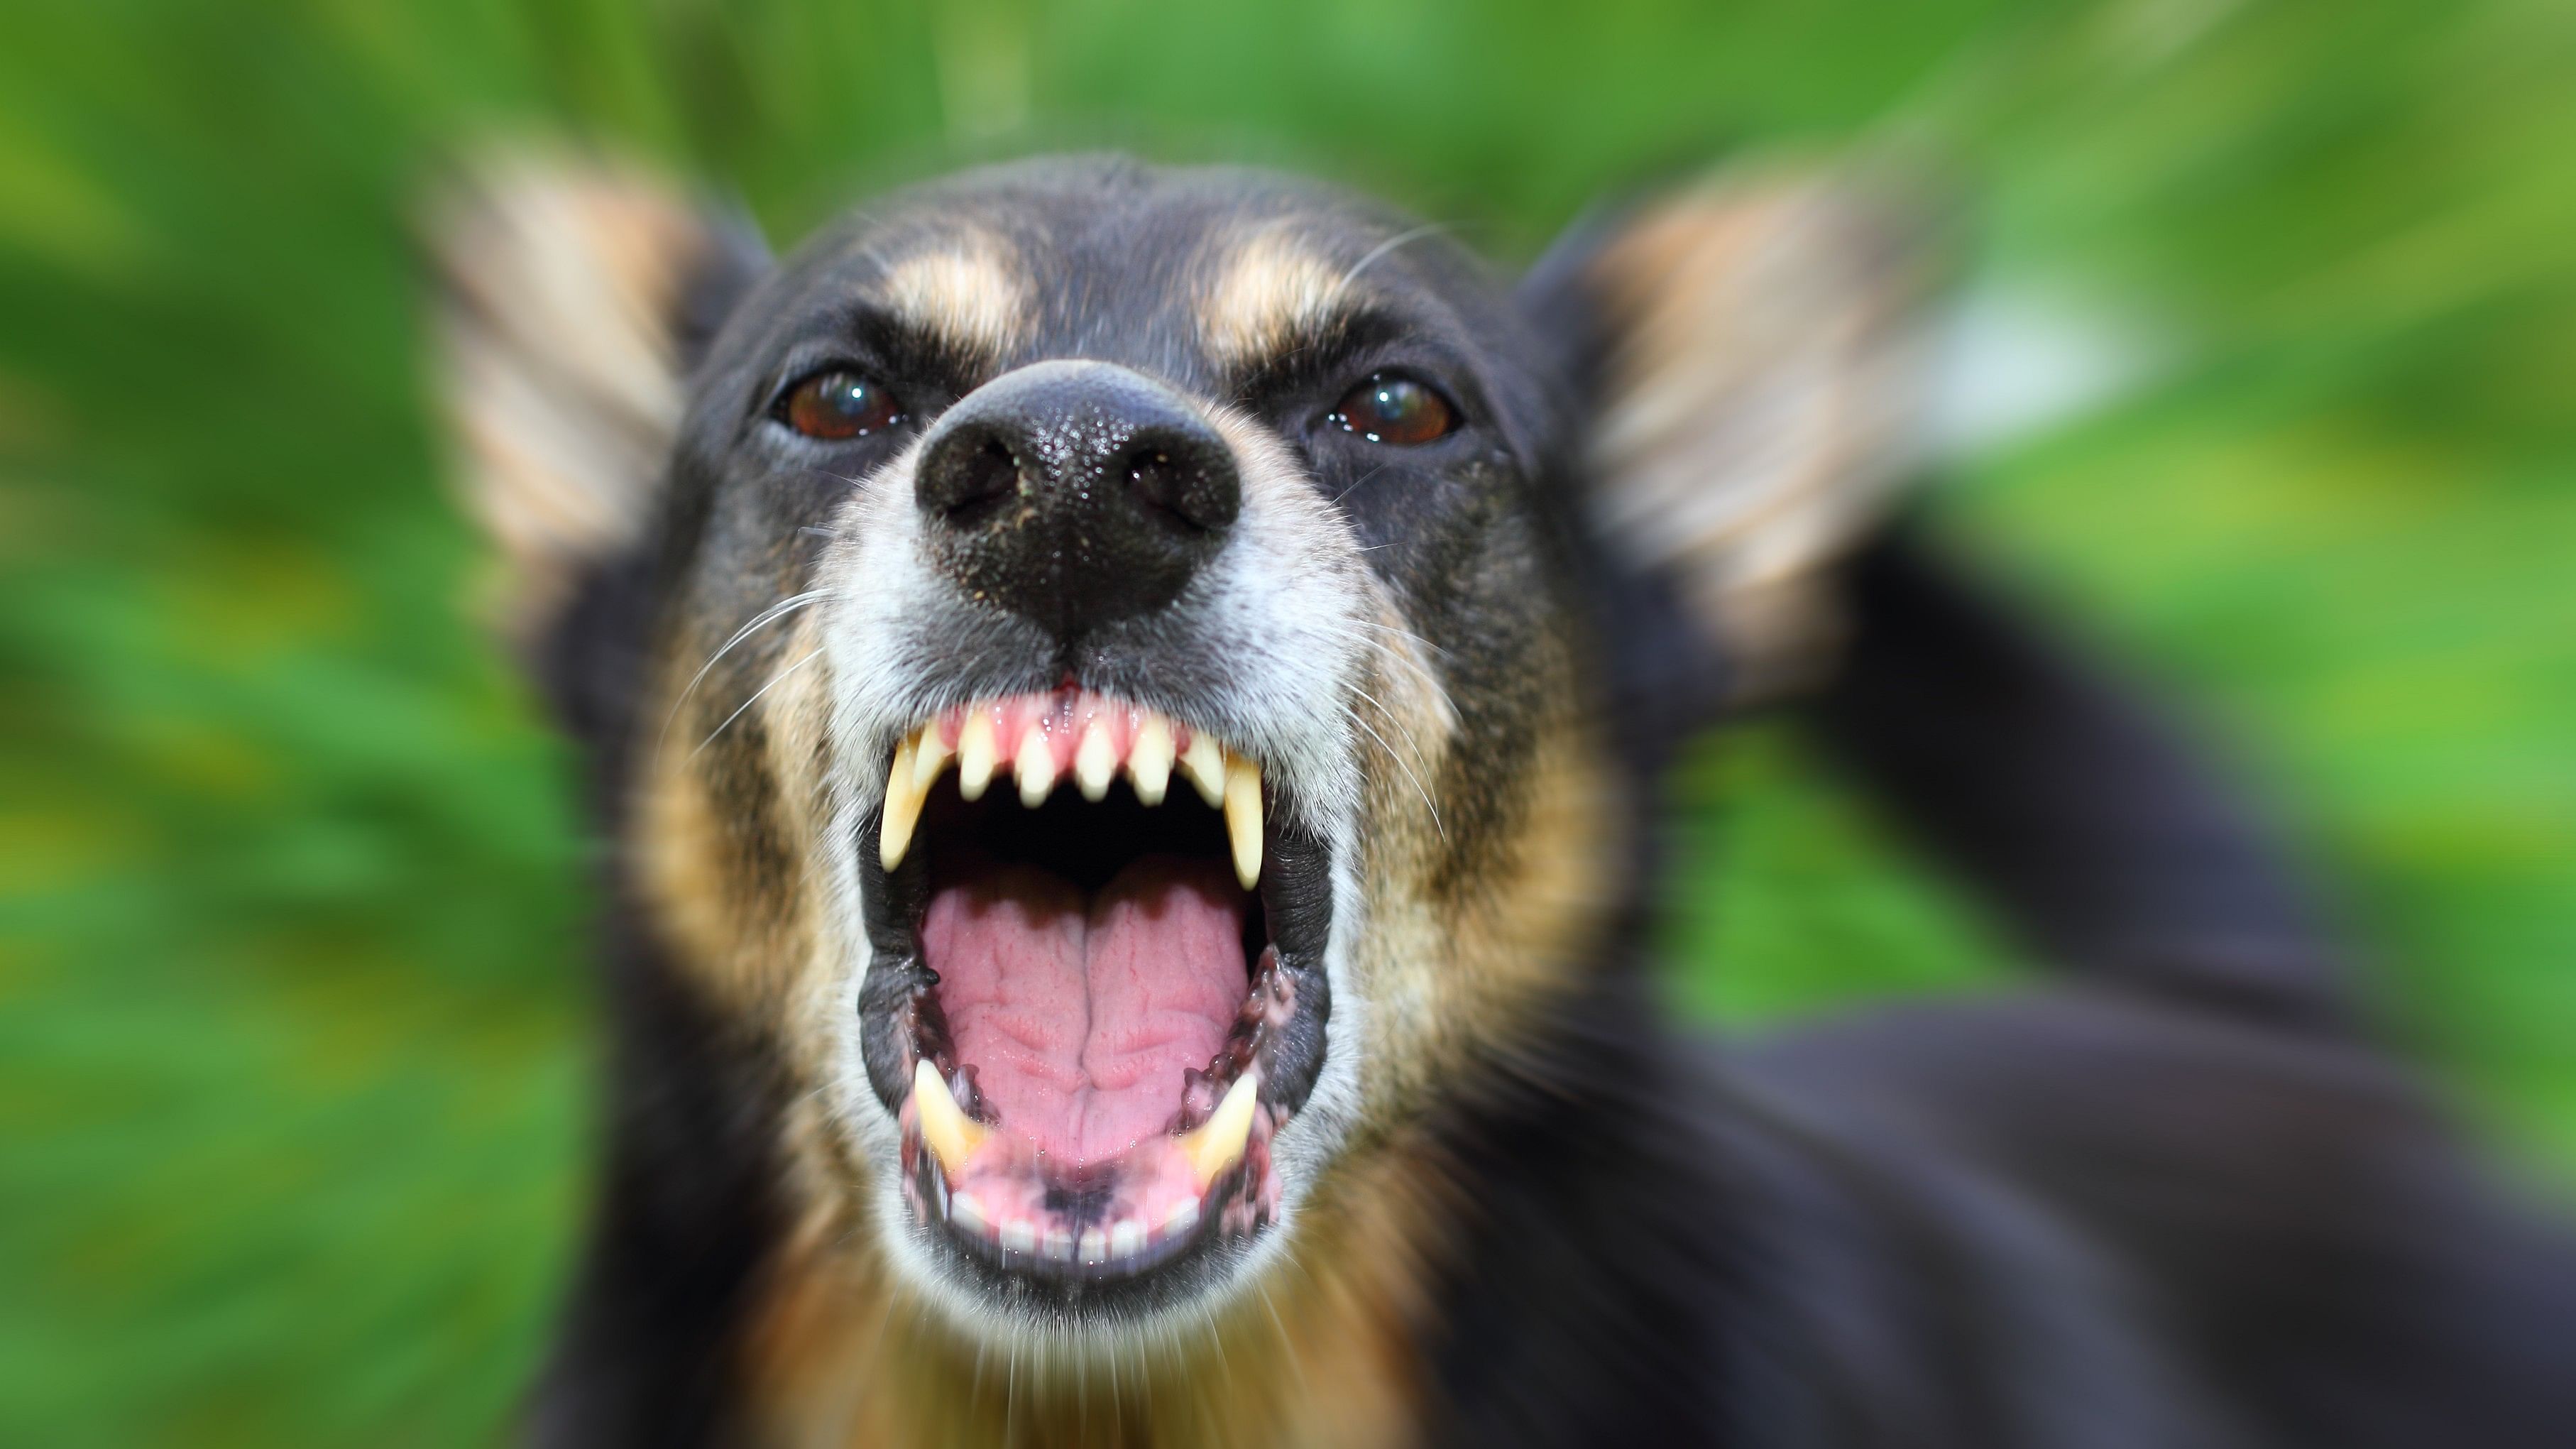 <div class="paragraphs"><p>Representative image showing a ferocious dog.</p></div>